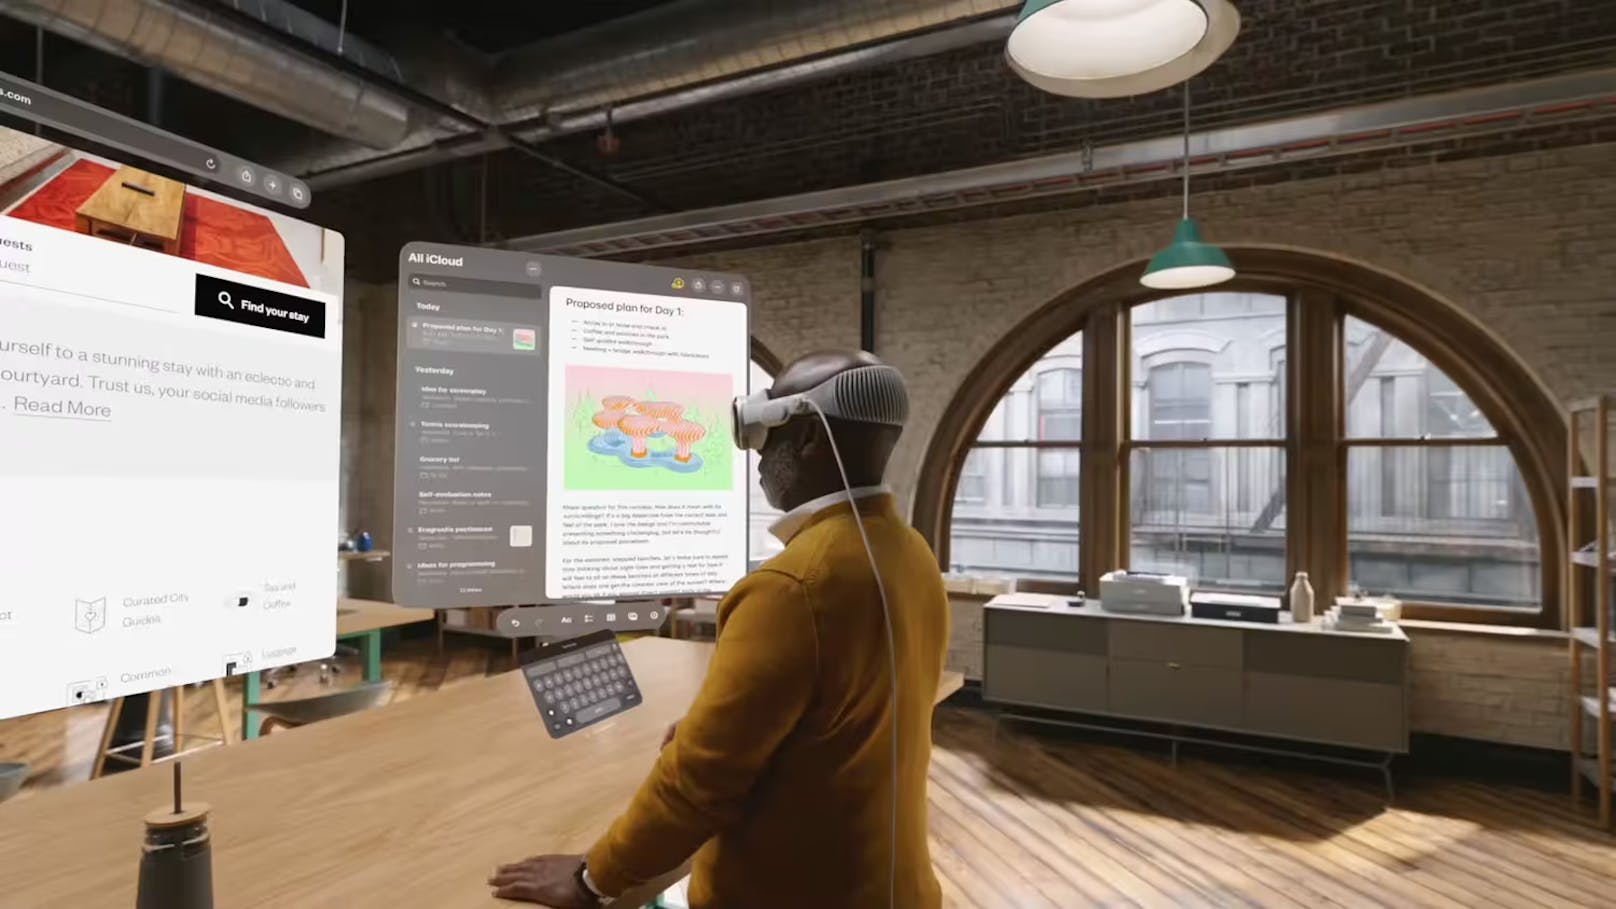 Mit der VR-Brille lassen sich mehrere Screens und Apps gleichzeitig anzeigen. Der Nutzer kann sie frei im Raum bewegen und die Fenster anpinnen.